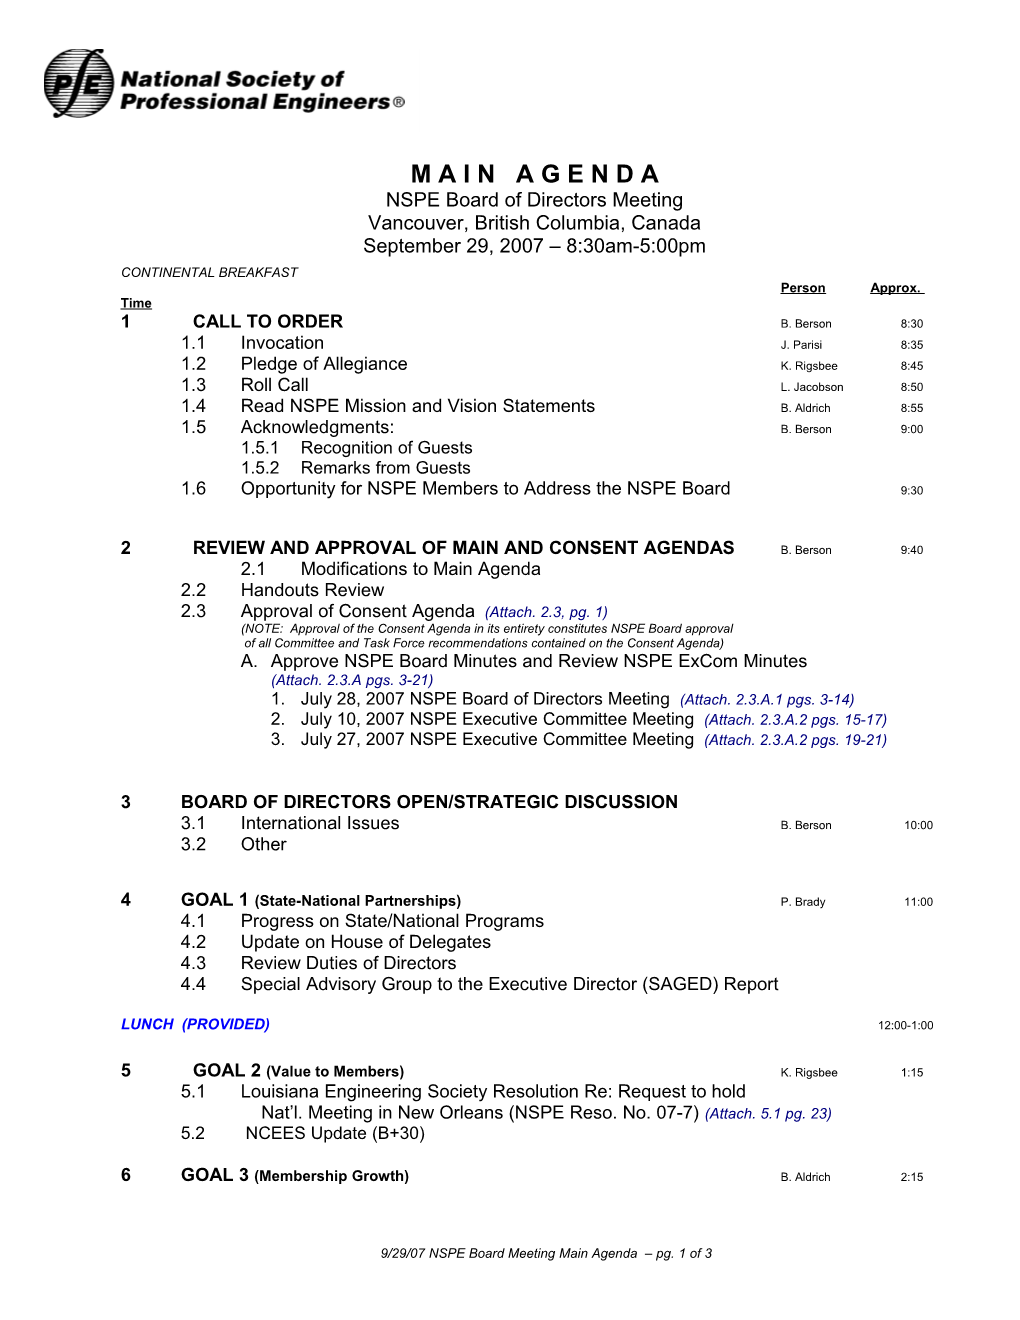 9/29/07 NSPE Board Meeting Main Agenda Pg. 1 of 3